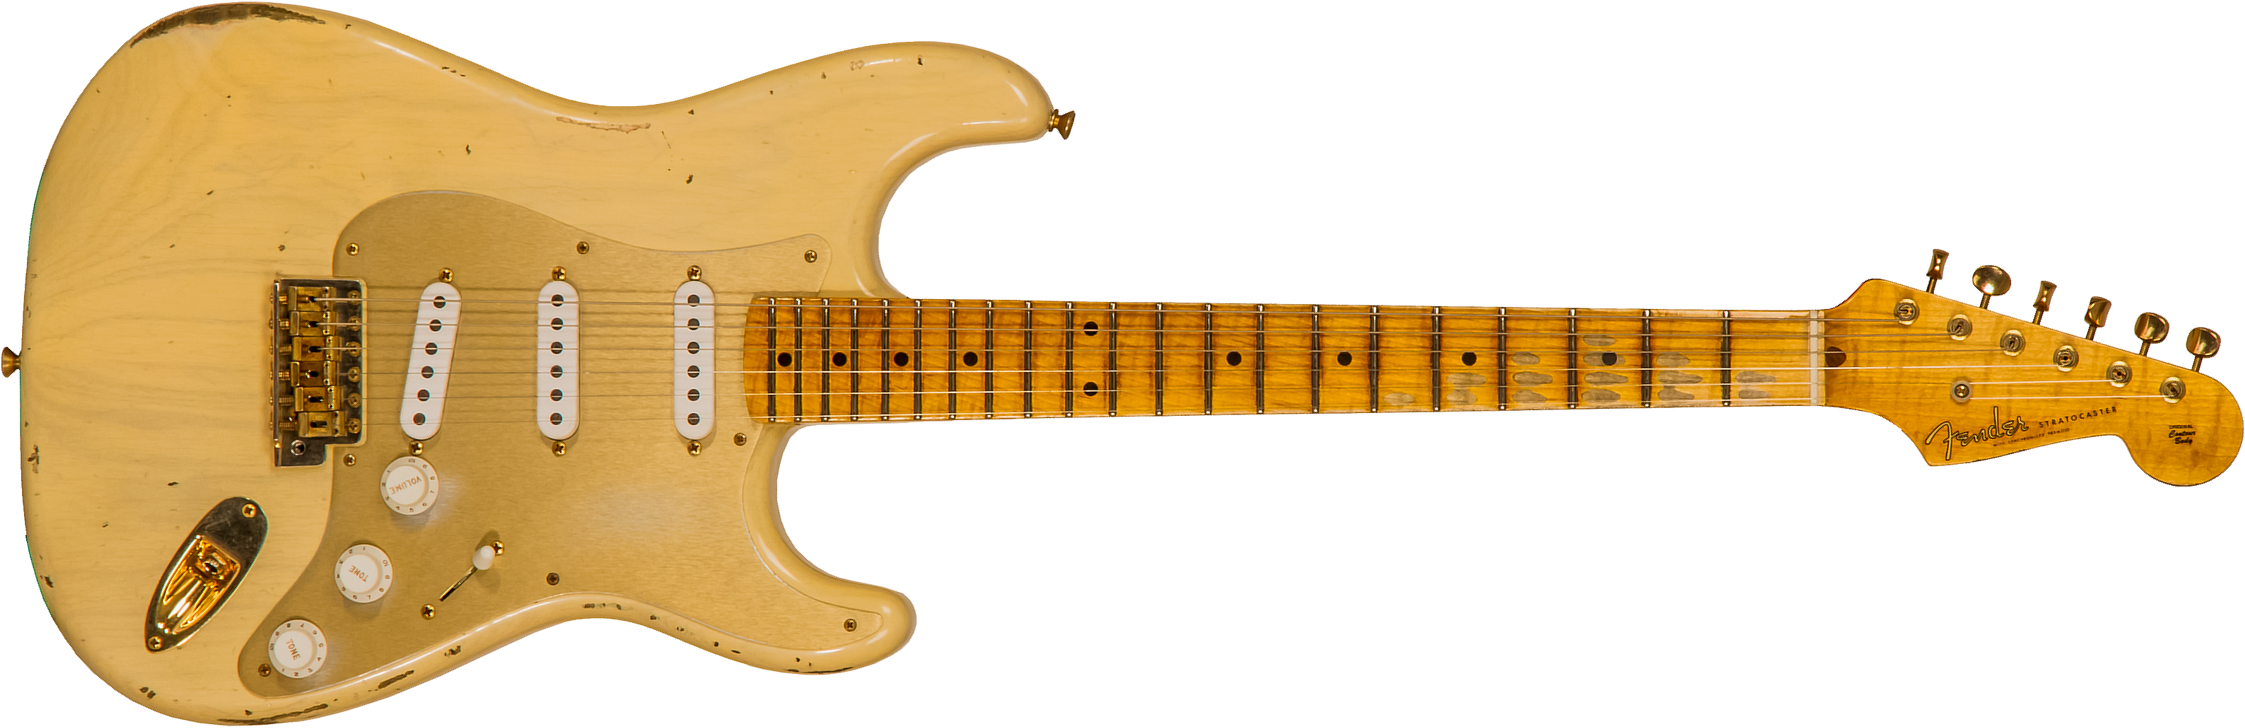 Fender Custom Shop Strat 1955 Bone Tone Usa 3s Trem Mn #cz554628 - Relic Honey Blonde W/ Gold Hardware - Guitare Électrique Forme Str - Main picture